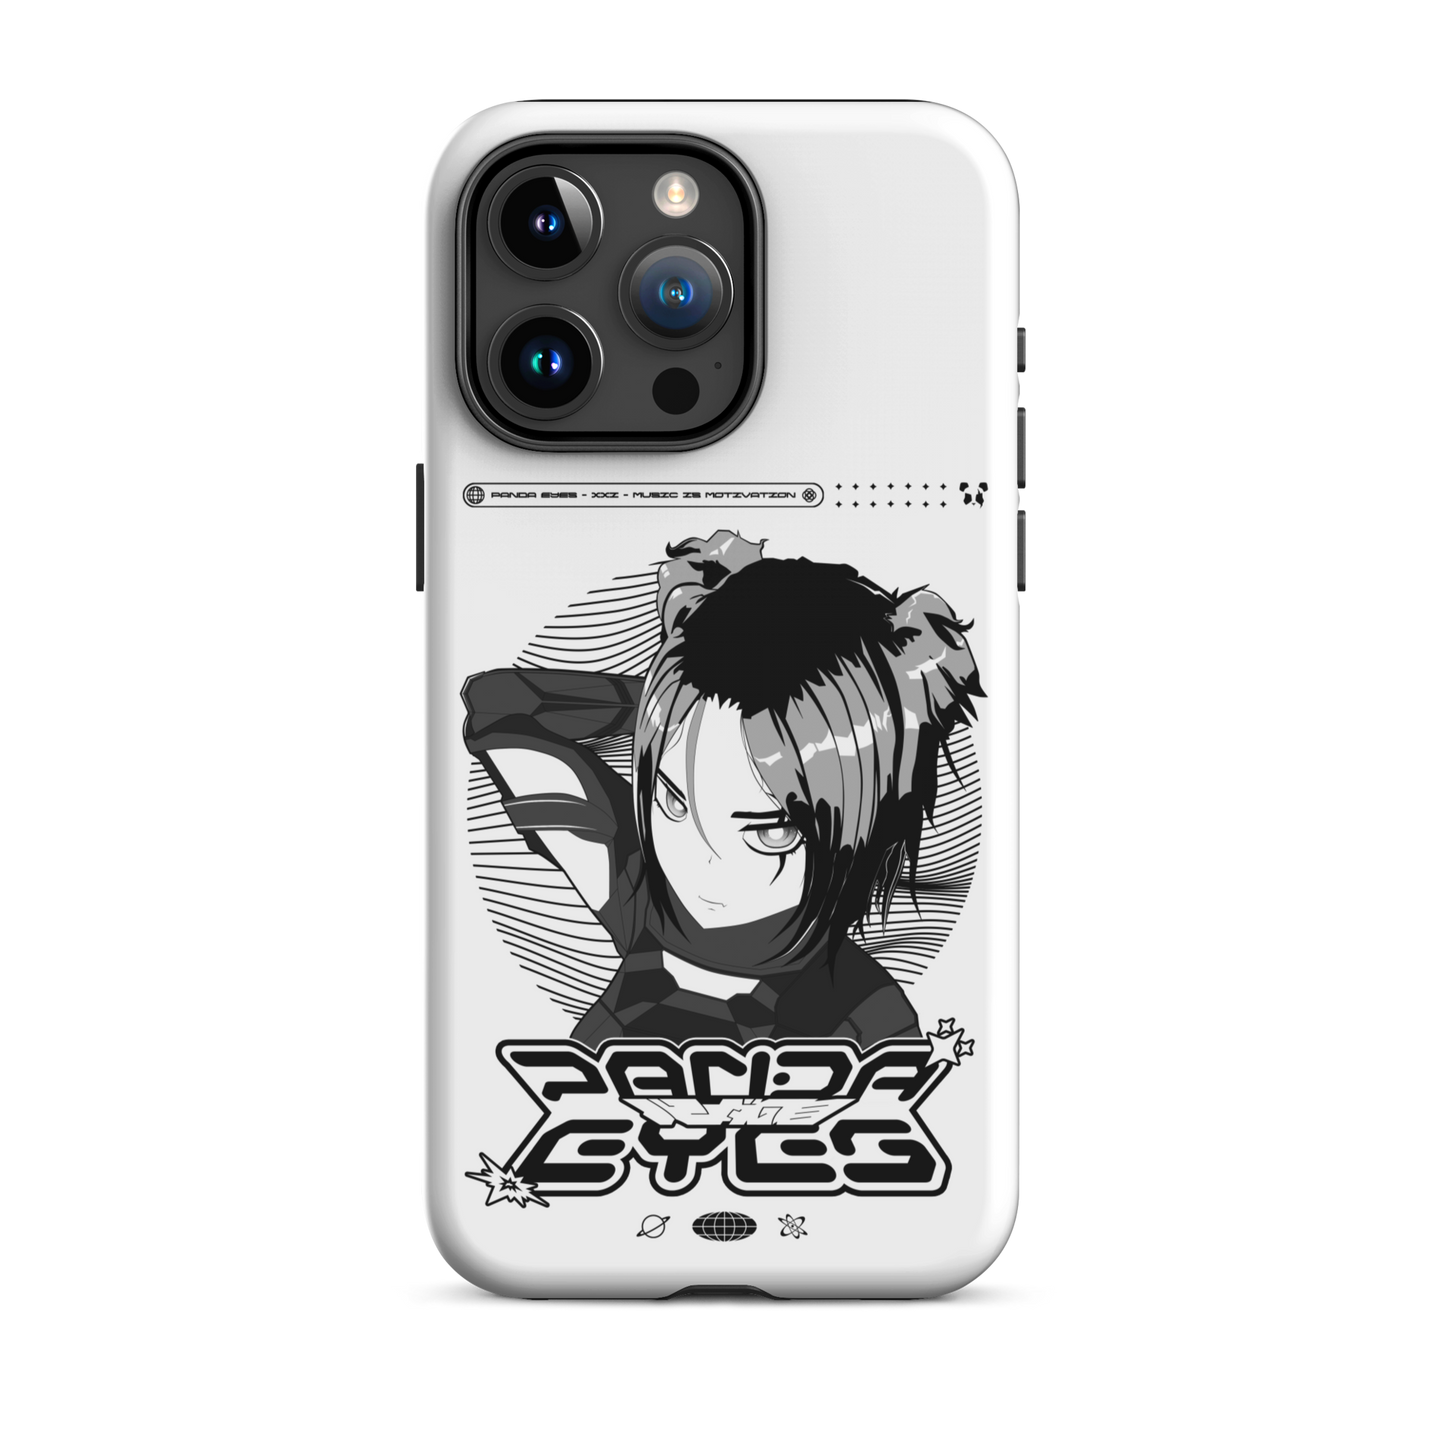 Panda Eyes v3 Case for iPhone®